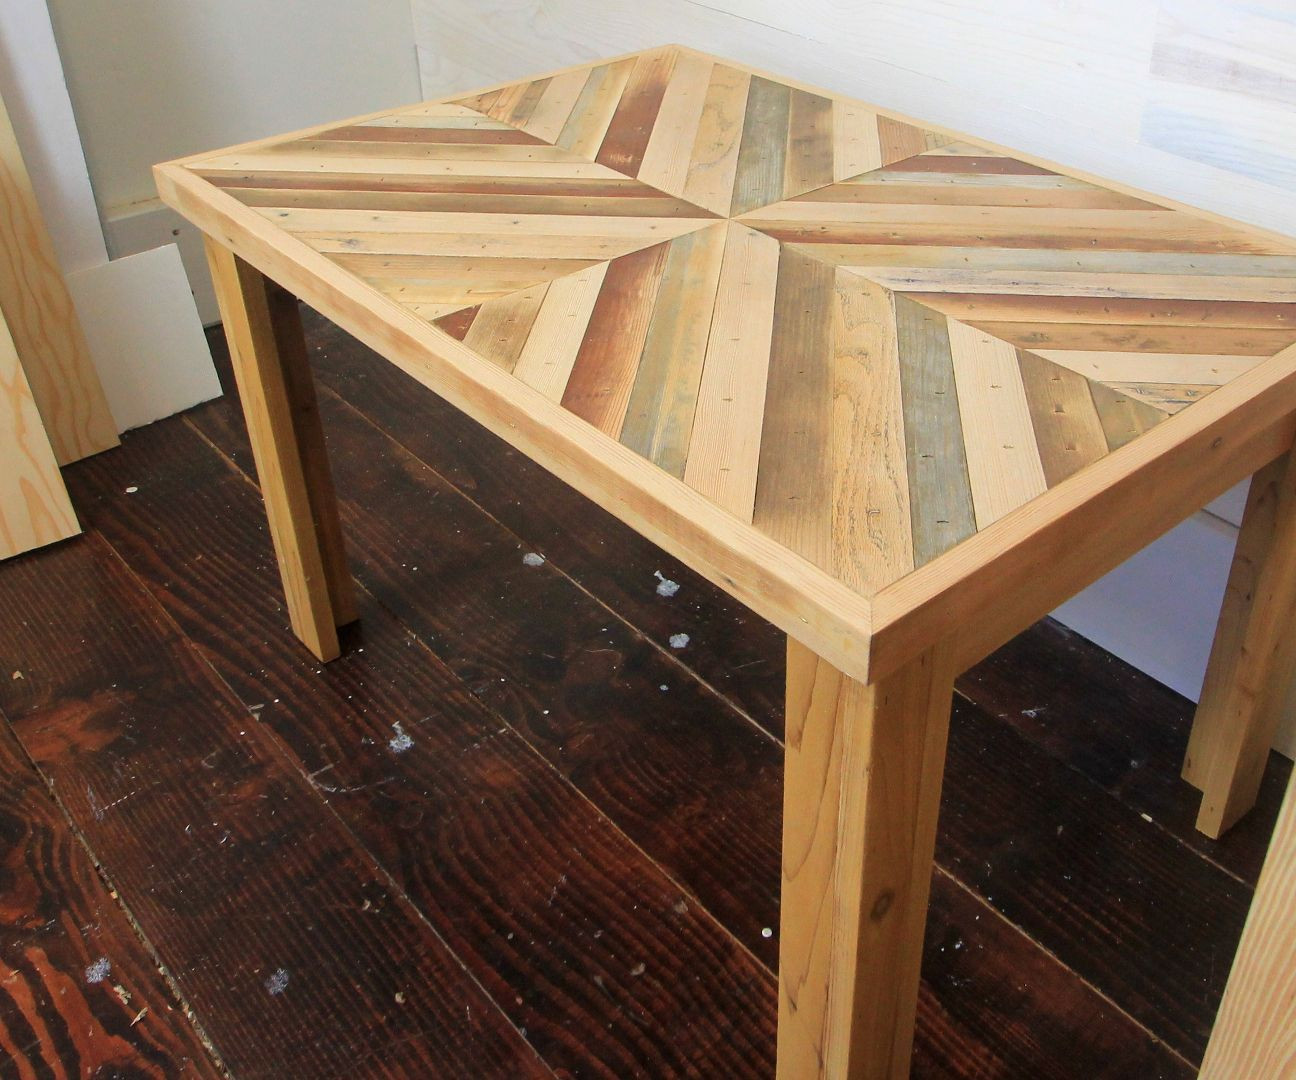 Reclaimed Wood Coffee Table DIY
 DIY Rustic Style Coffee Table with Reclaimed Wood